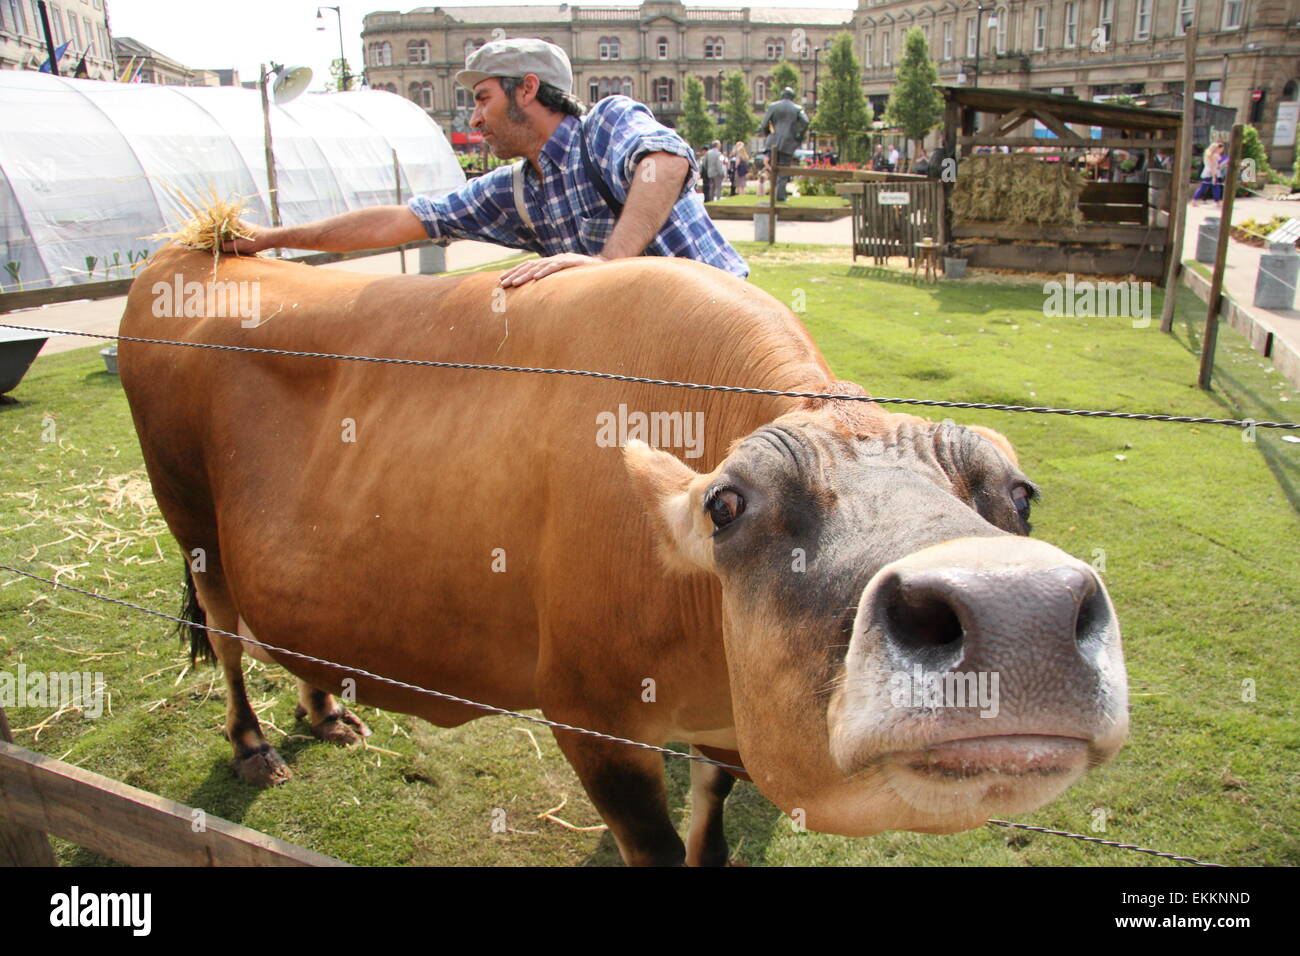 Eine Kuh bekommt eine Rub-Down während der Pop-up-French Farm-Veranstaltung in Huddersfield Stadtzentrum anlässlich der Tour de France 2014, UK Stockfoto